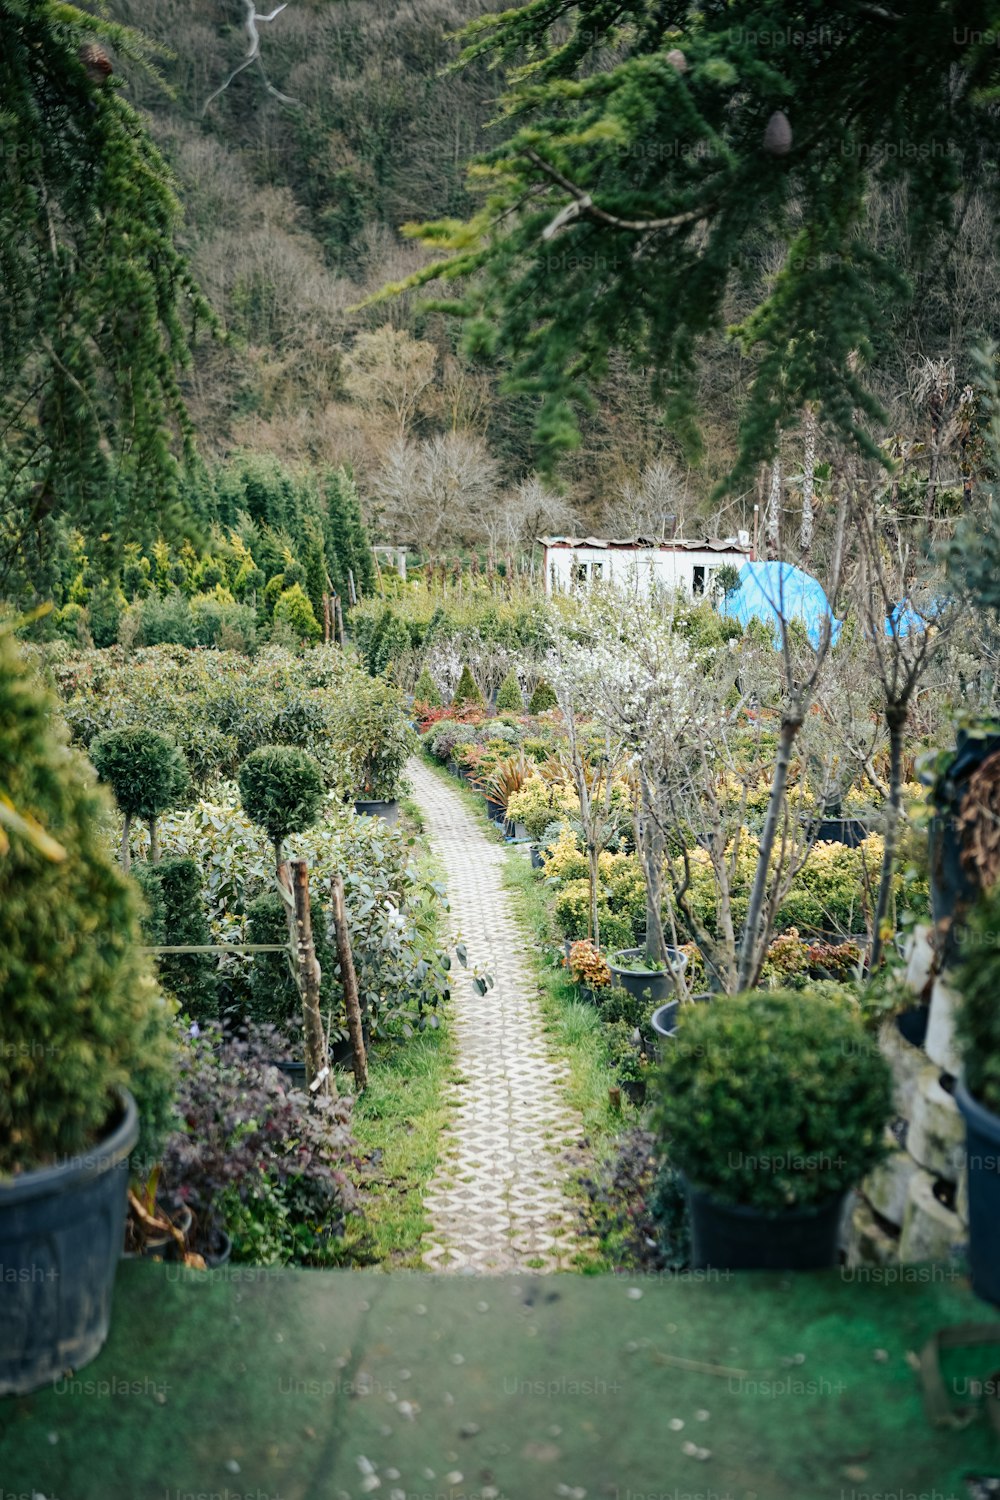 Un percorso attraverso un giardino pieno di molte piante